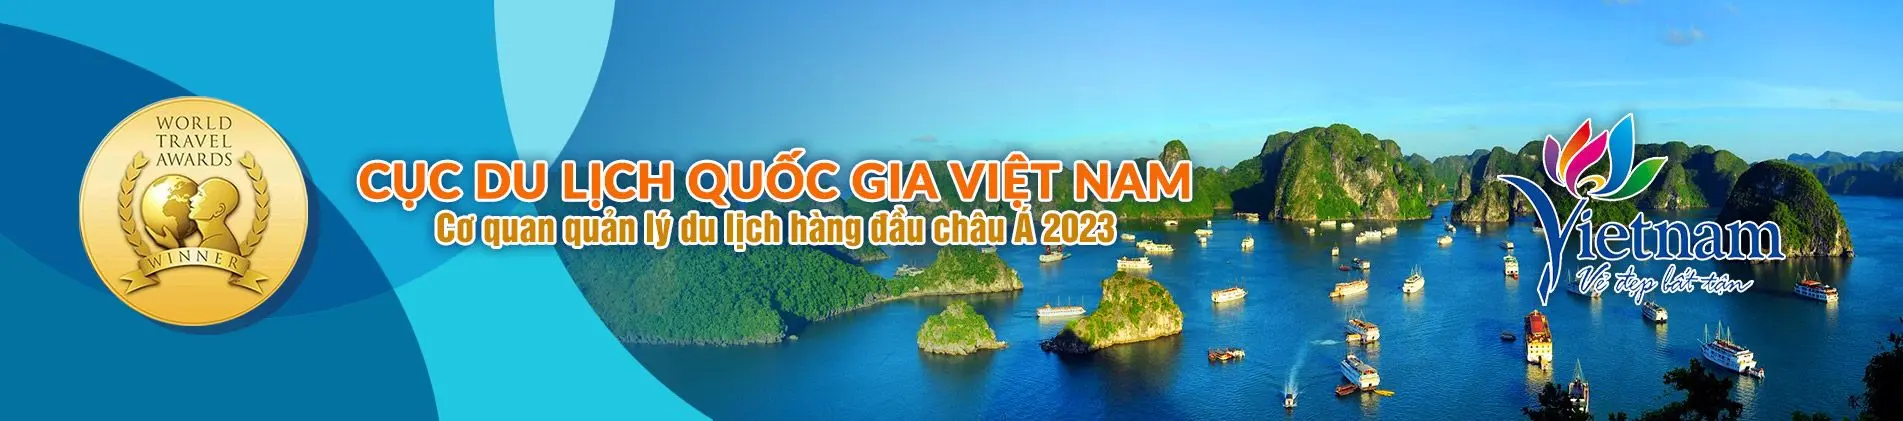 Top 10 Việt Nam 2